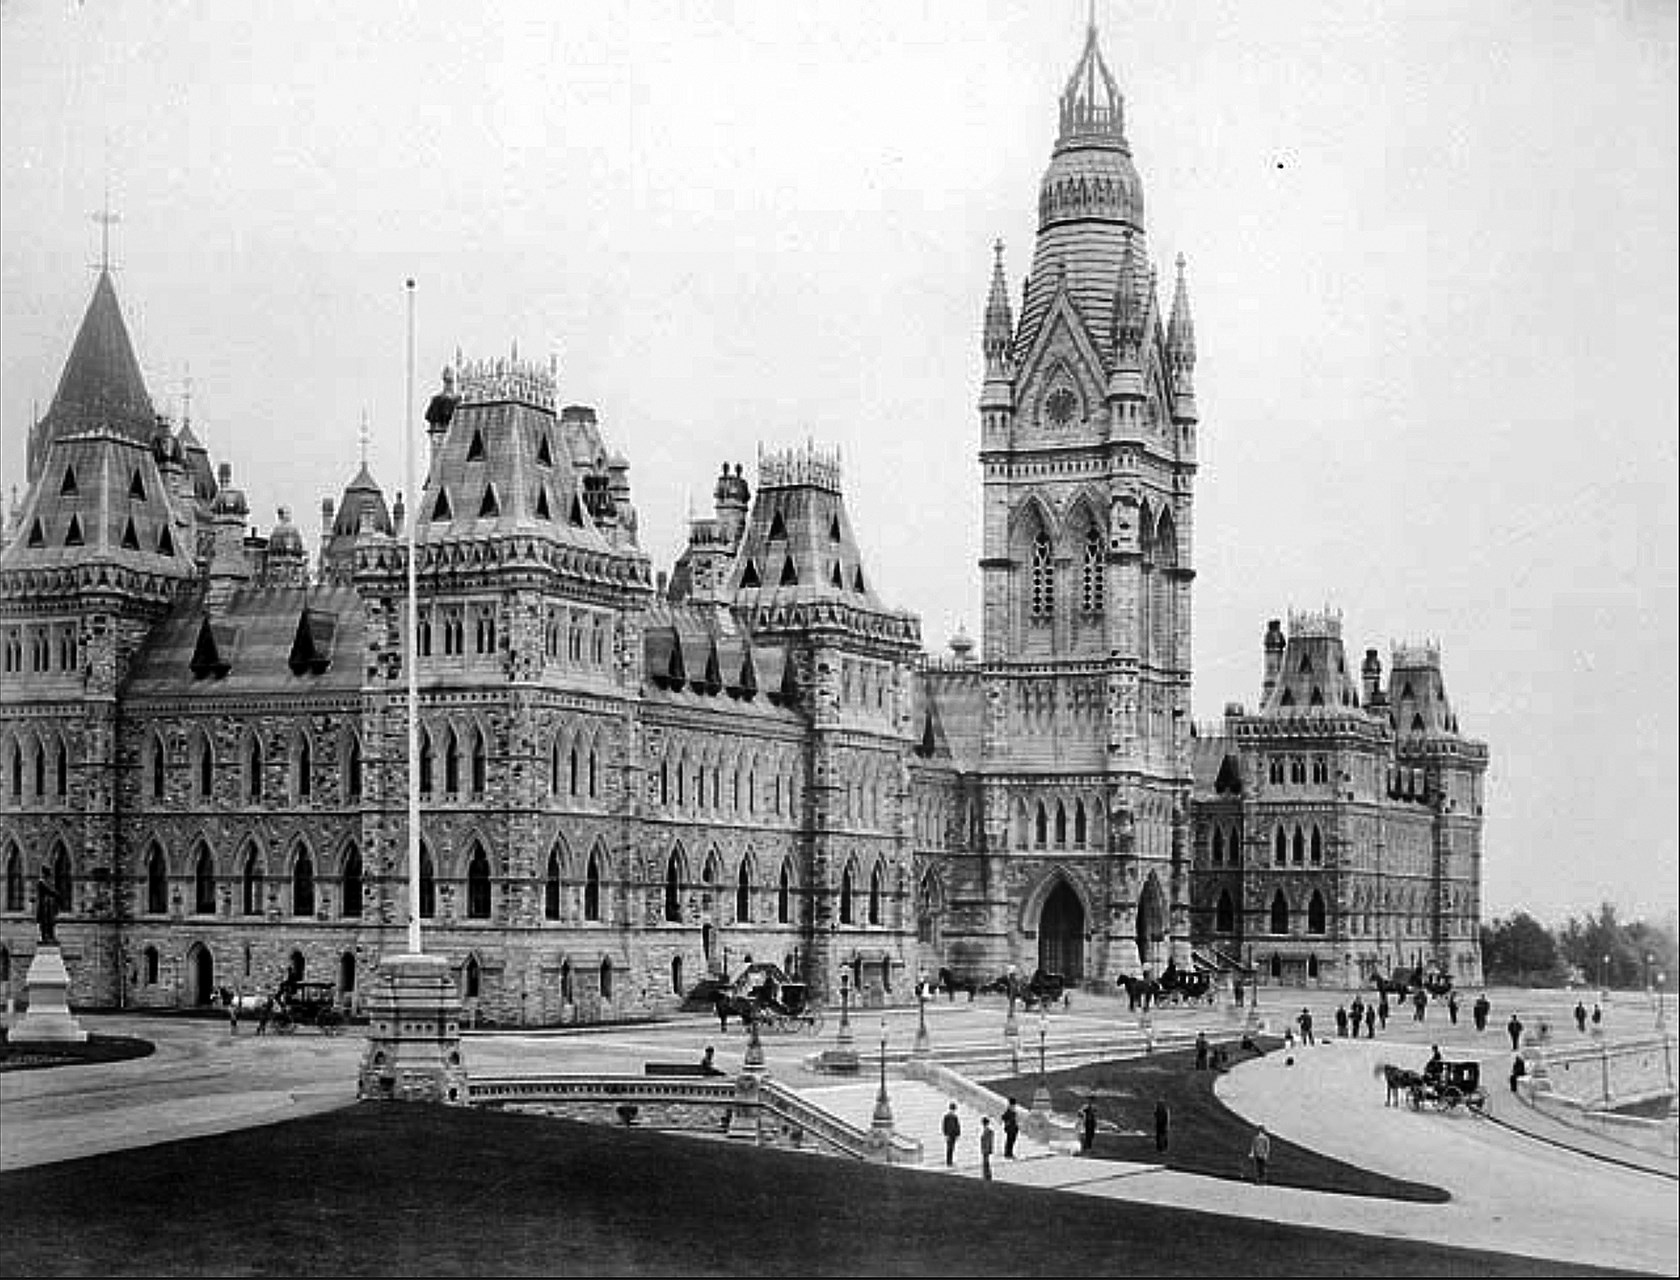 Le prédécesseur de l’édifice du Centre, avec sa Tour Victoria ornée de 55 mètres, était un symbole du Canada reconnu internationalement. (Crédit photo : Bibliothèque et Archives Canada)